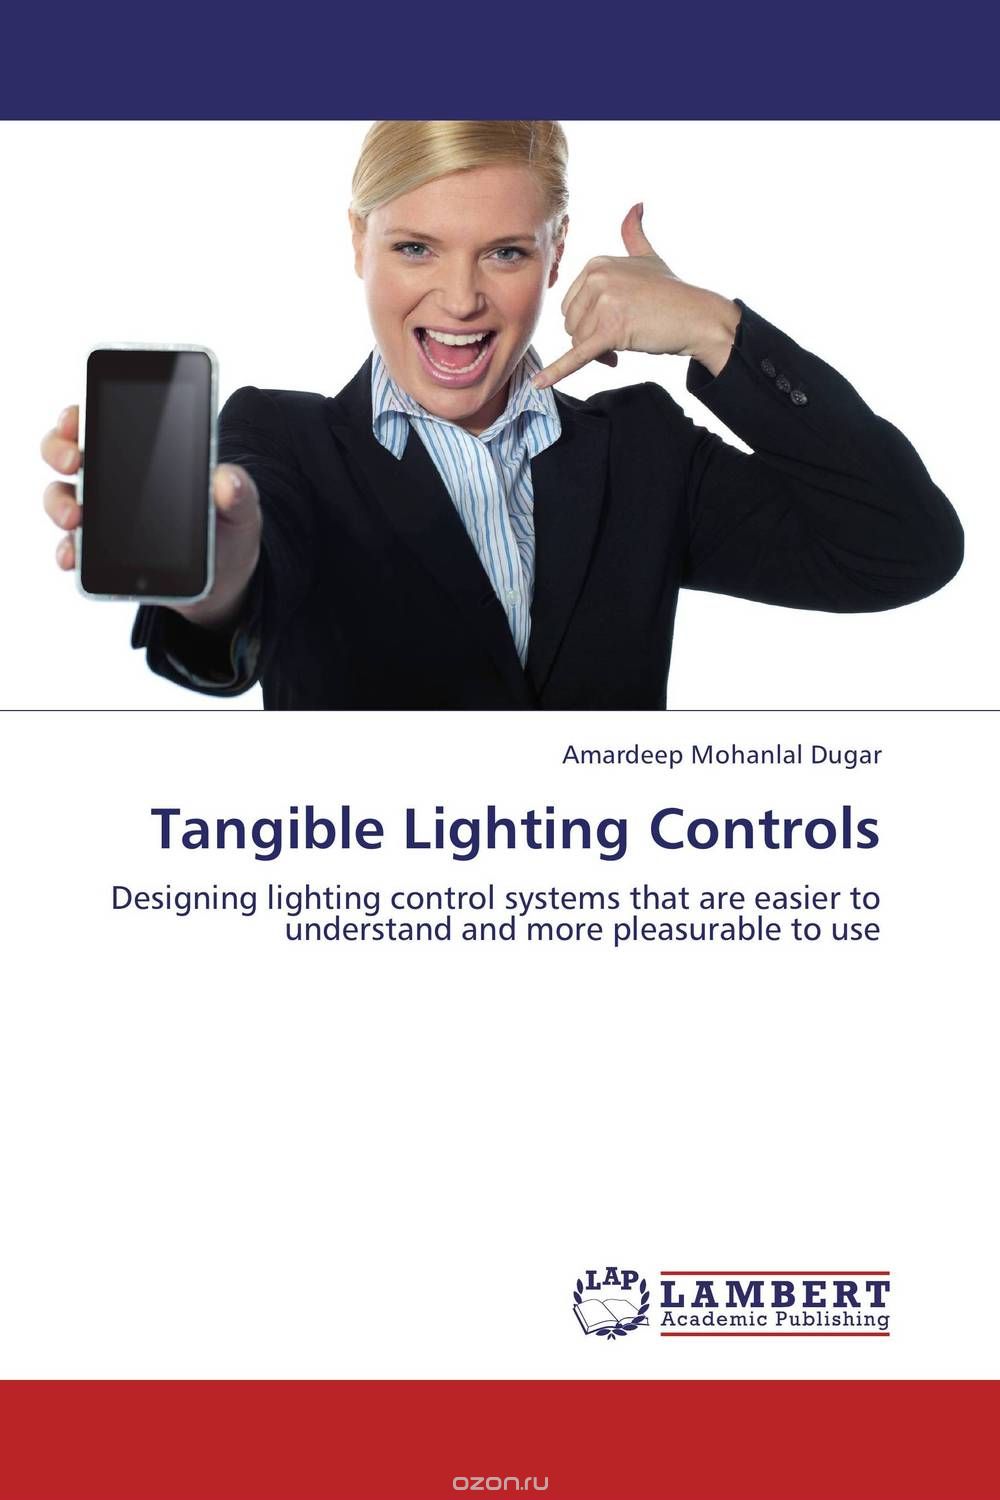 Скачать книгу "Tangible Lighting Controls"